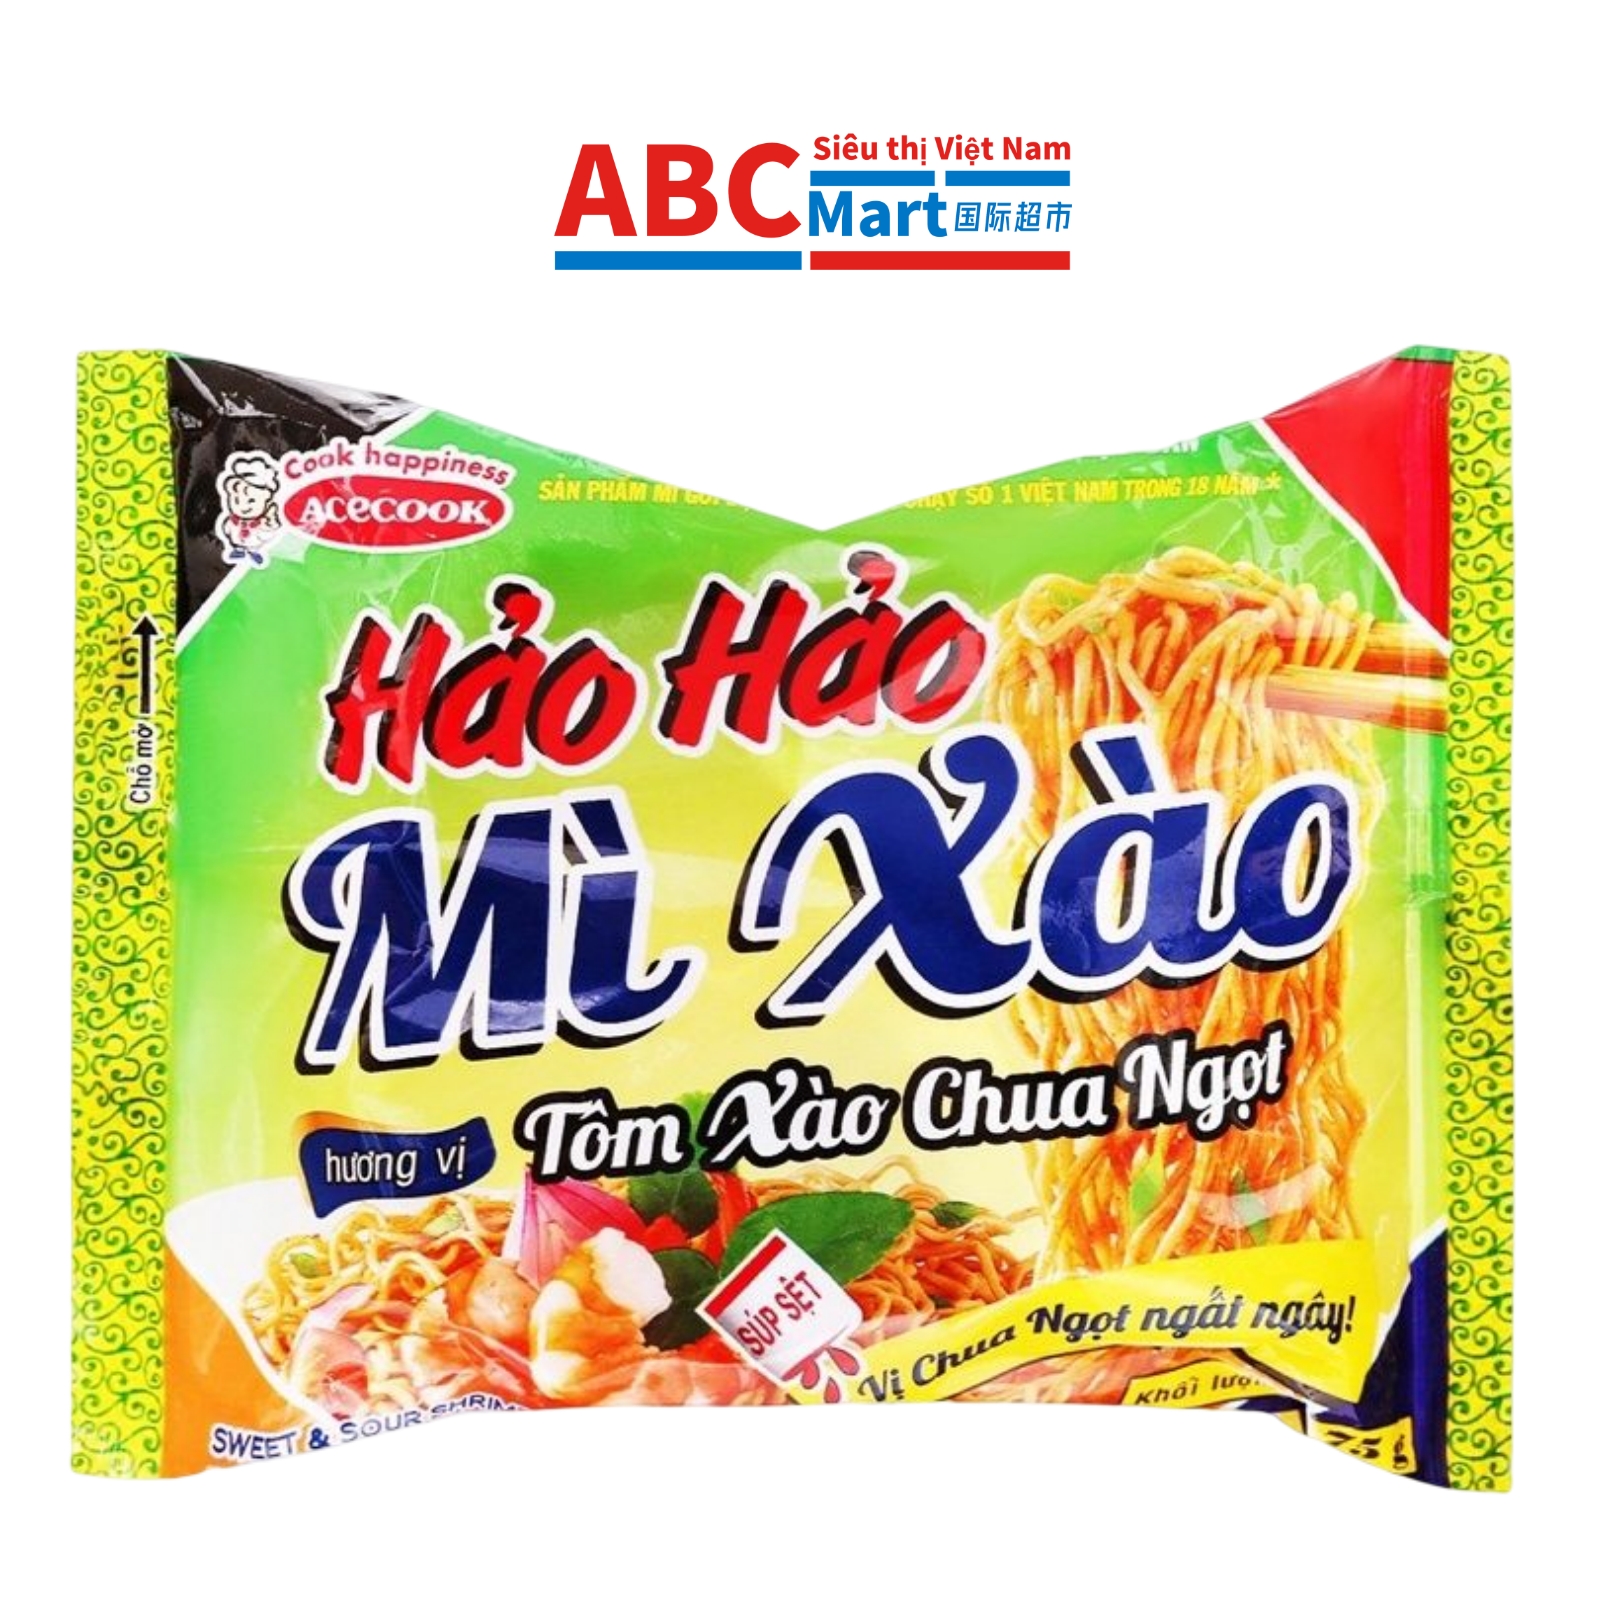 【Việt Nam-Mì xào Hảo Hảo tôm chua ngọt 75g】好好糖醋虾炒面-ABCMart 国际超市